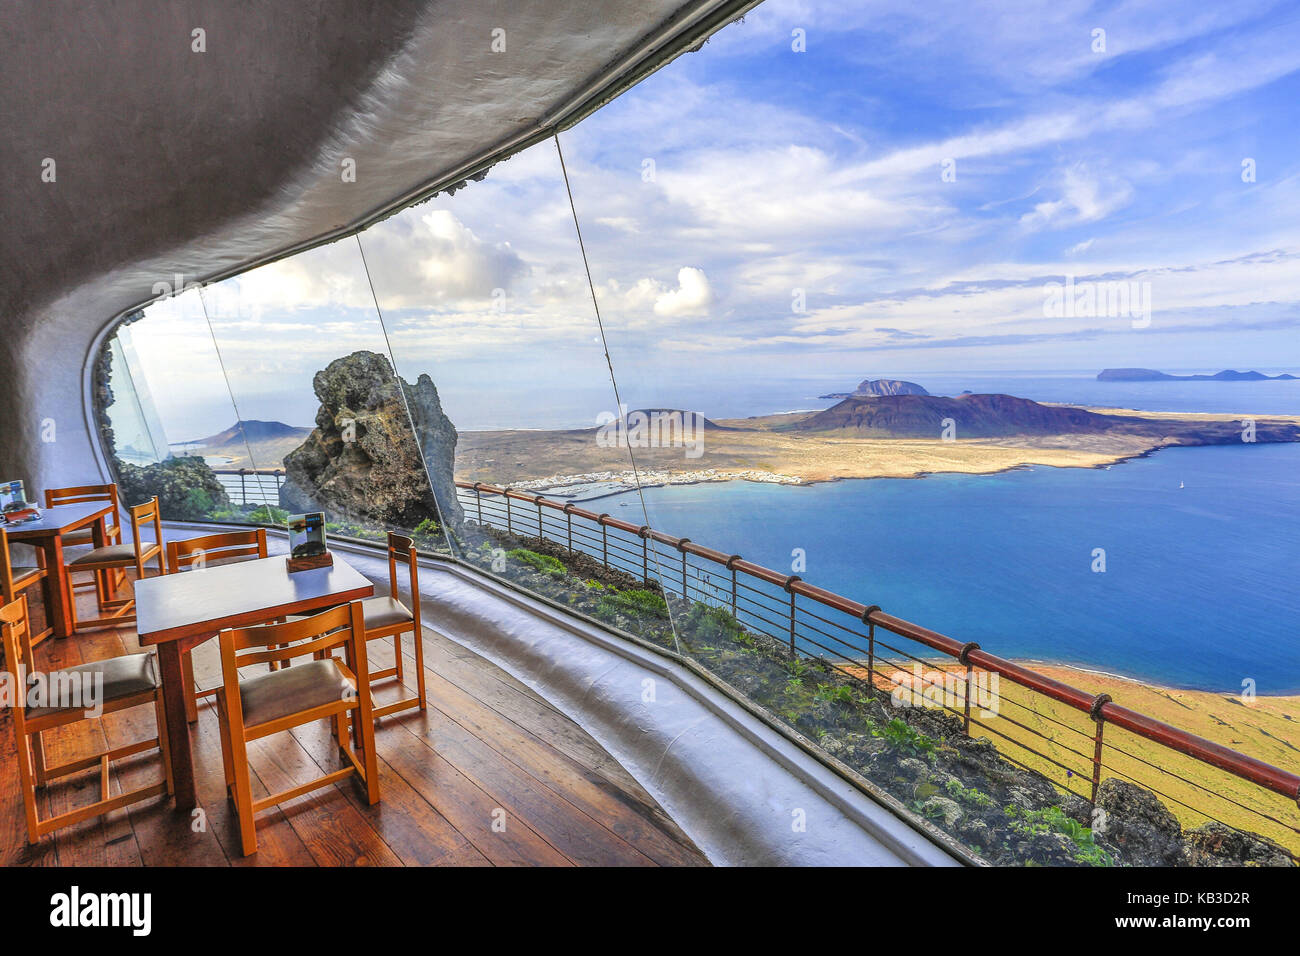 Spagna isole canarie Lanzarote, Mirador del Rio, vedetta, ristorante, interior shot, Foto Stock